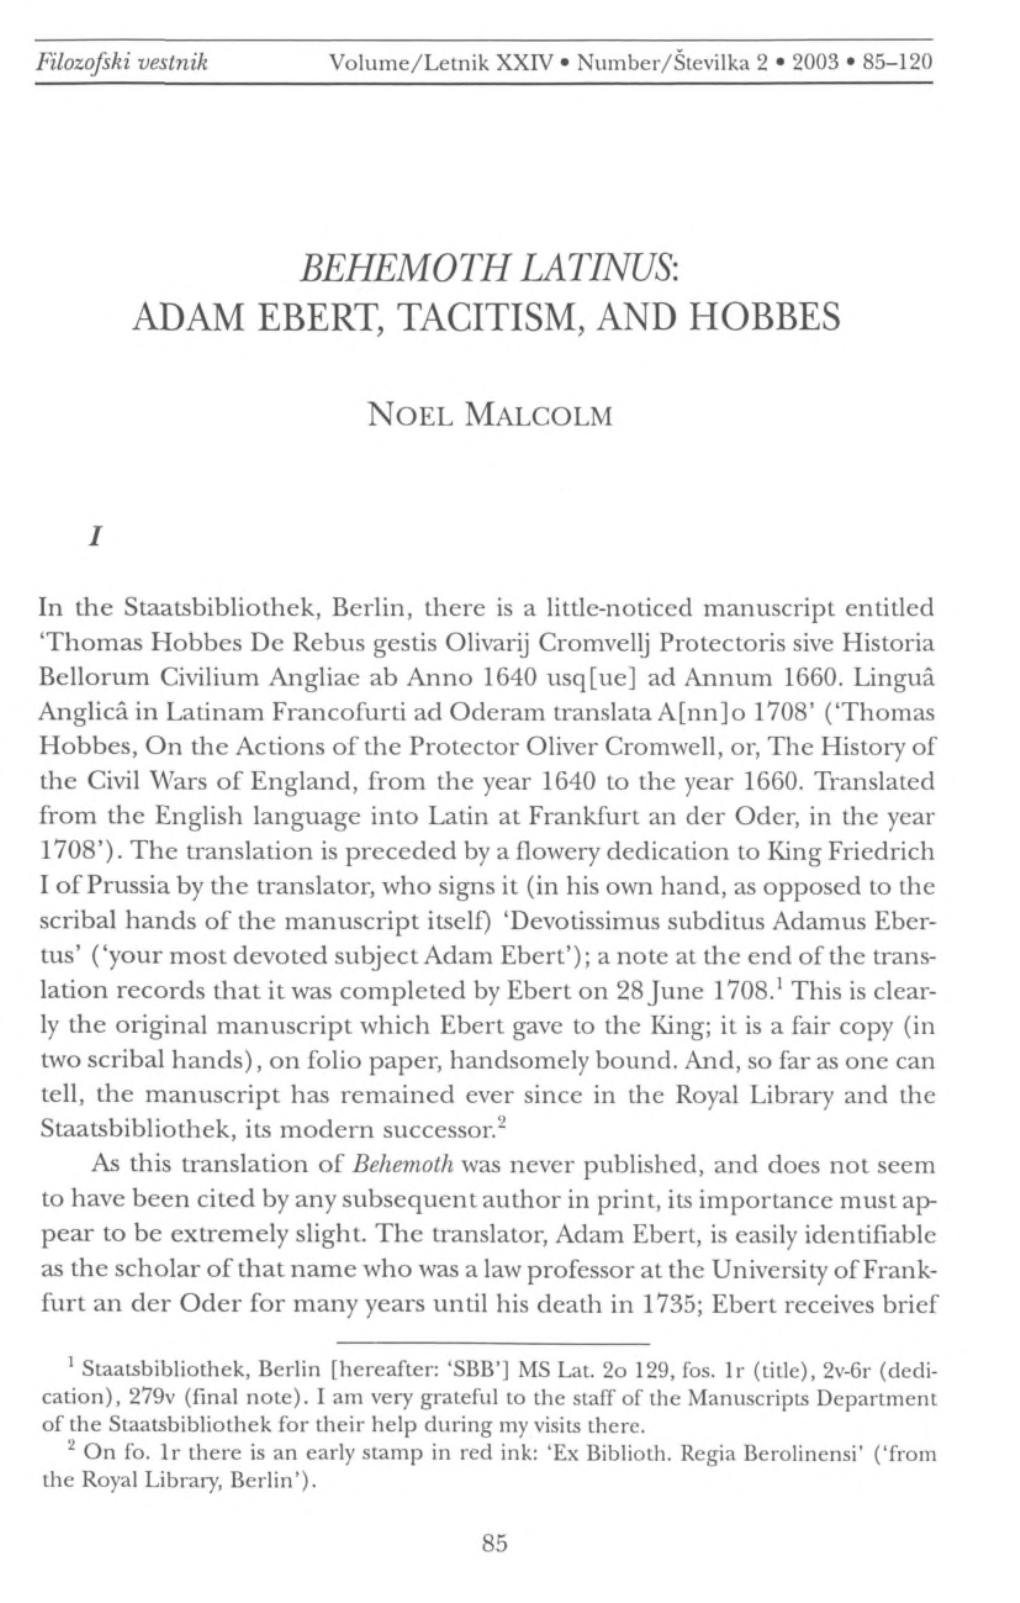 Behemoth Latinus: Adam Ebert, Tacitism, and Hobbes